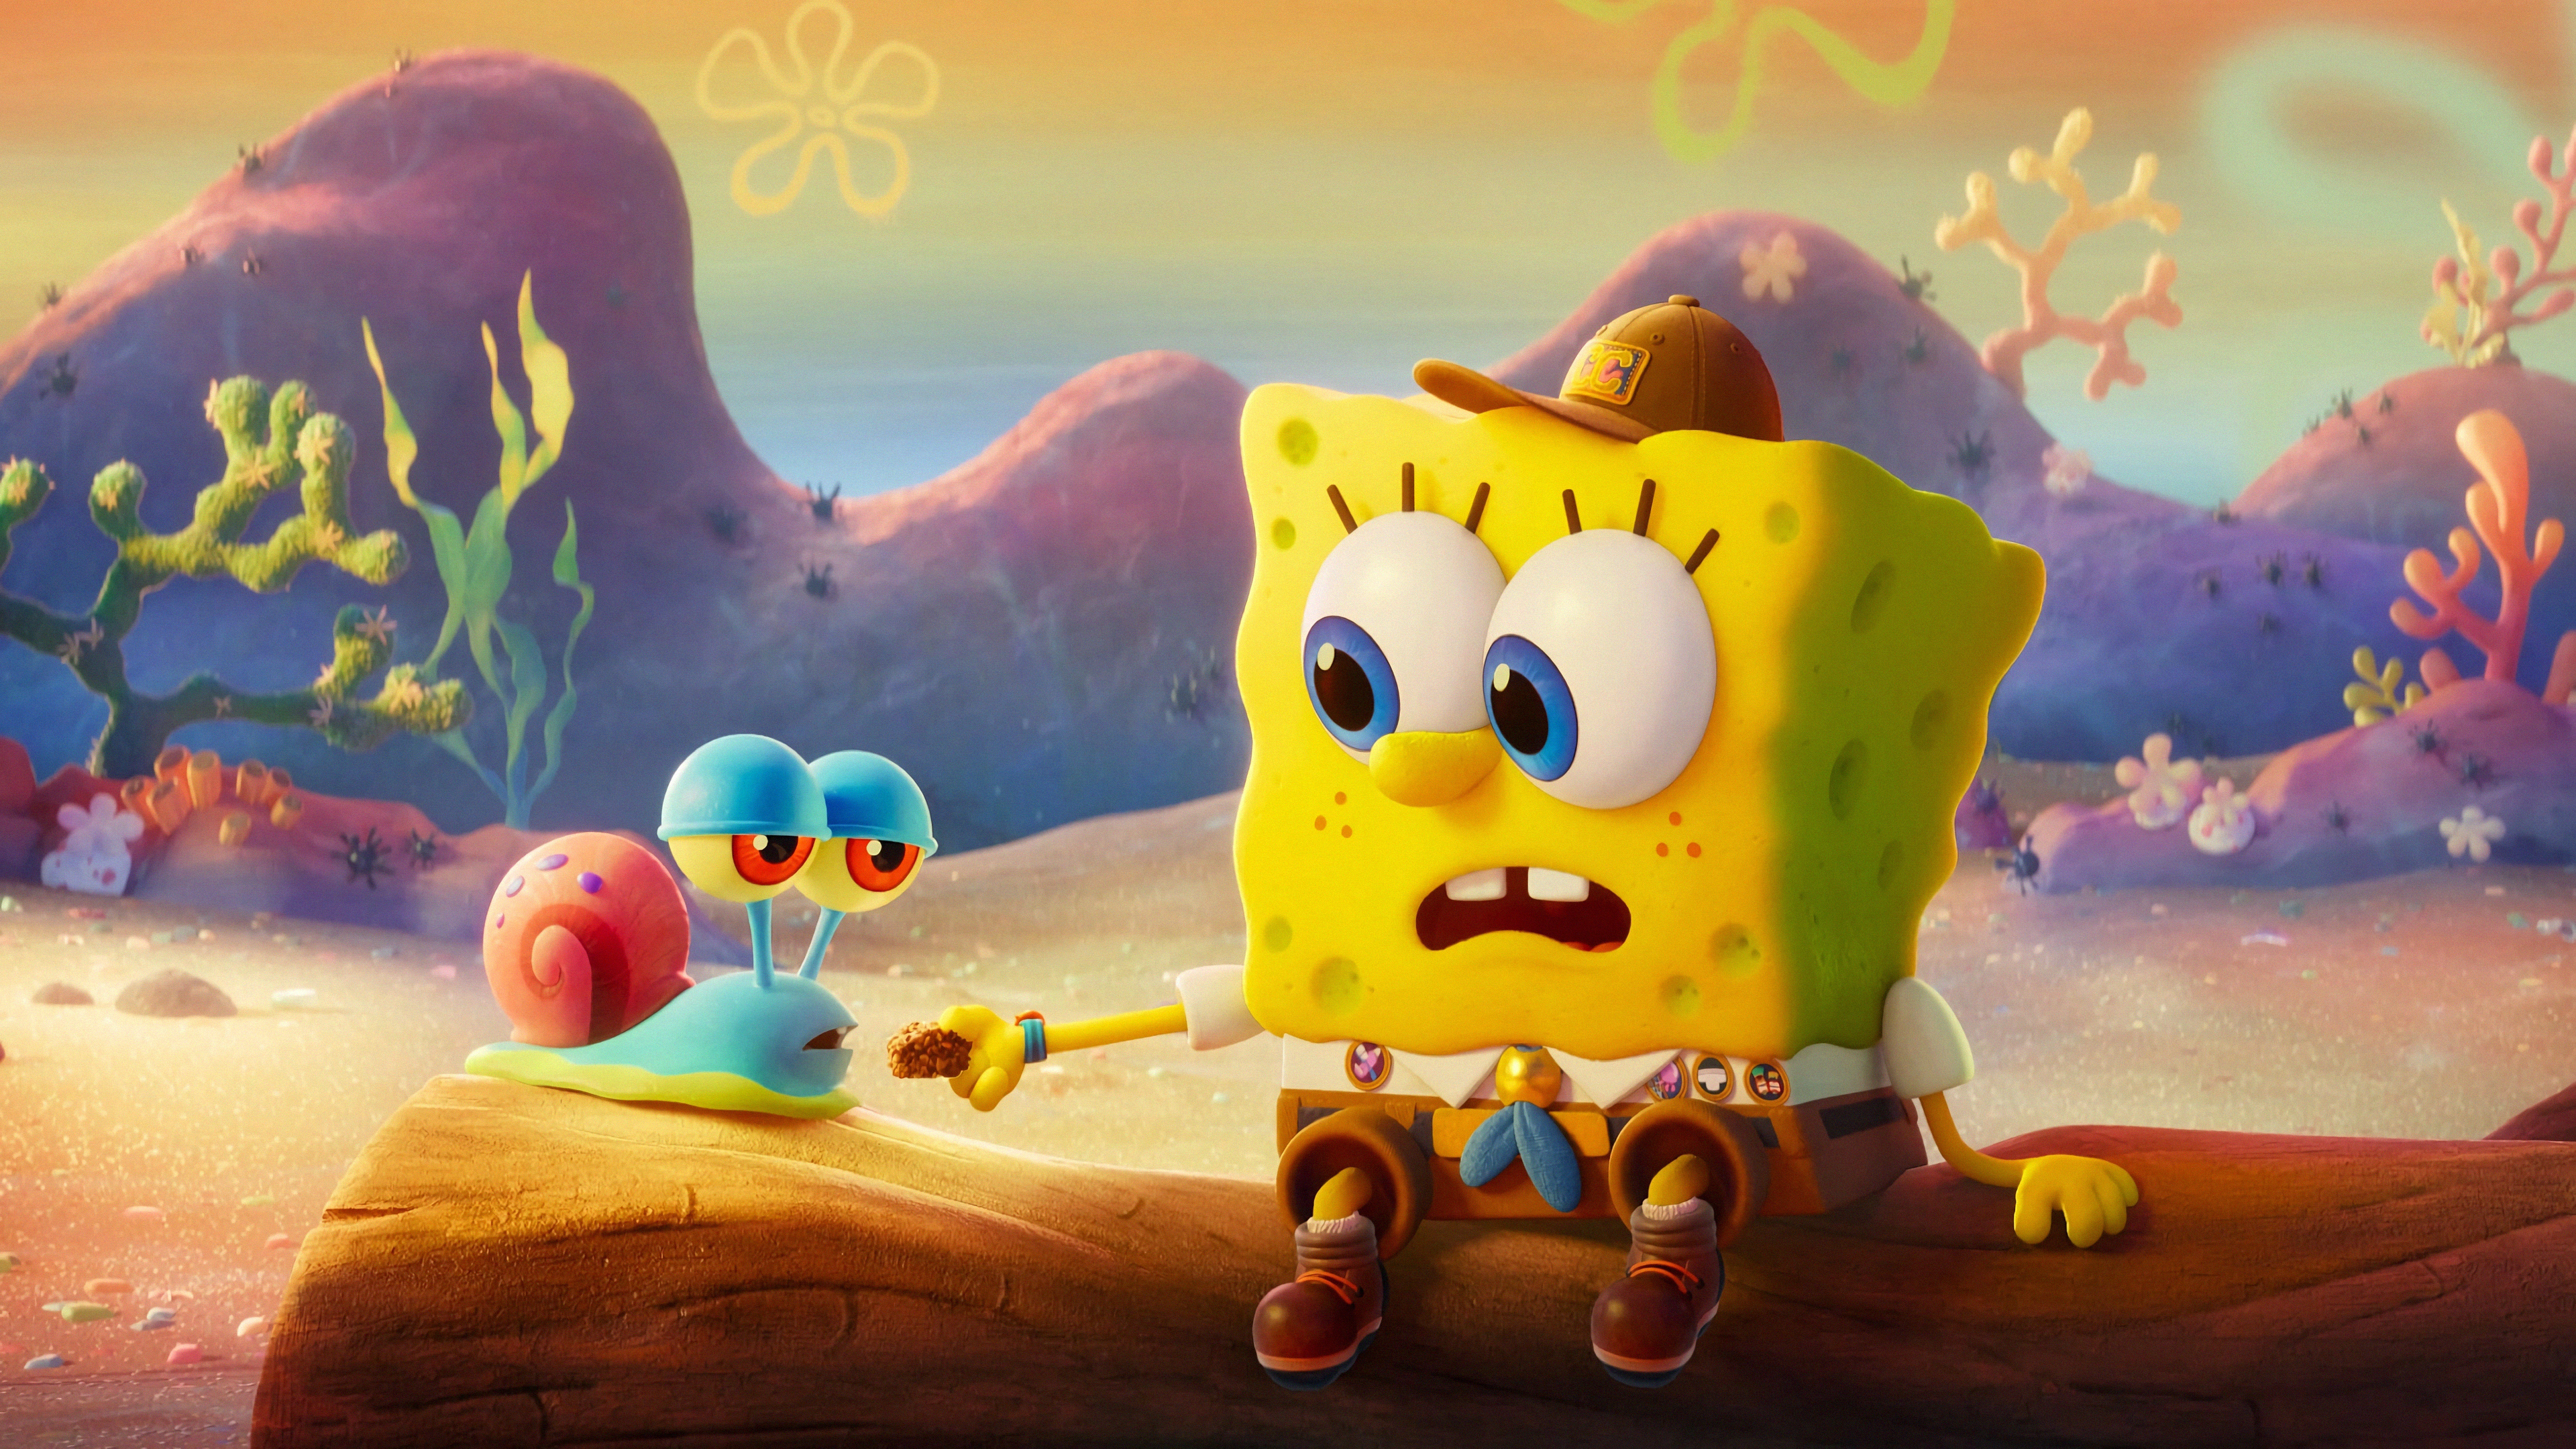 FREE Spongebob Background - Image Download in Illustrator, EPS, SVG, JPG,  PNG | Template.net